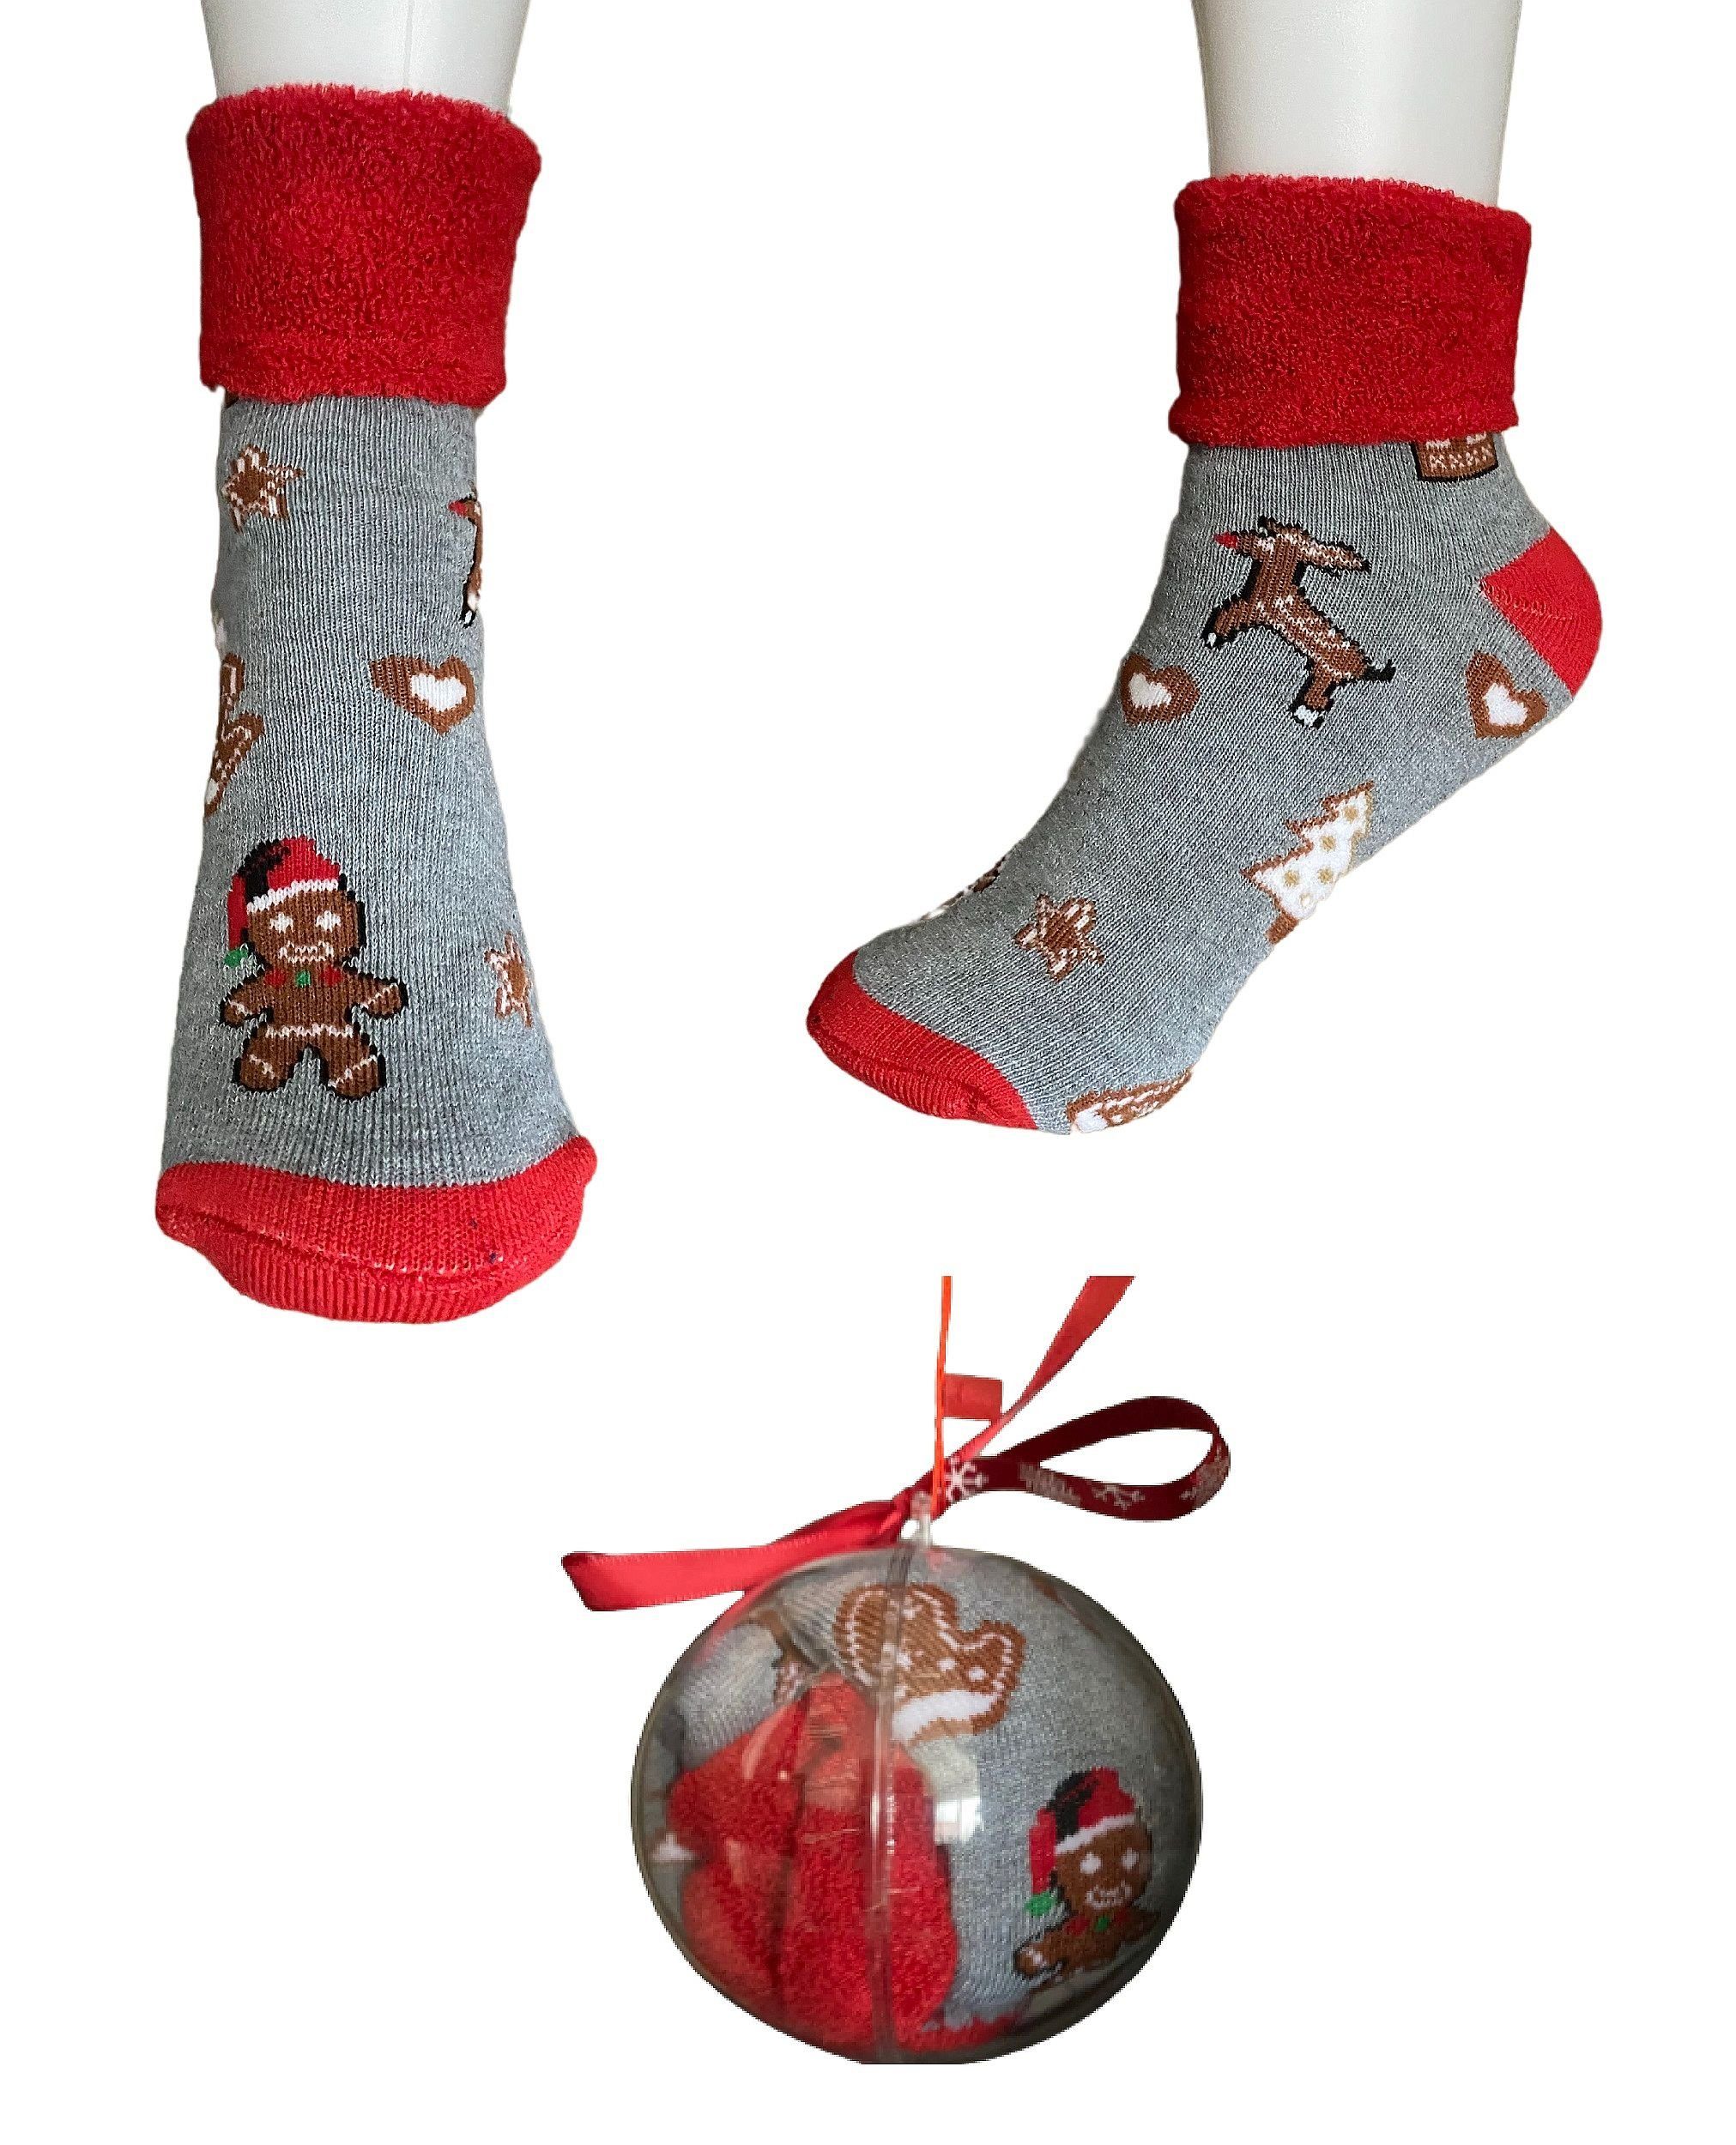 in Damen Socken Kuschelsocken Motiv: Gr. Weihnachts 36-41 Motiv_5 Rungassi Kugel Grau_Motiv_5 Weihnachts